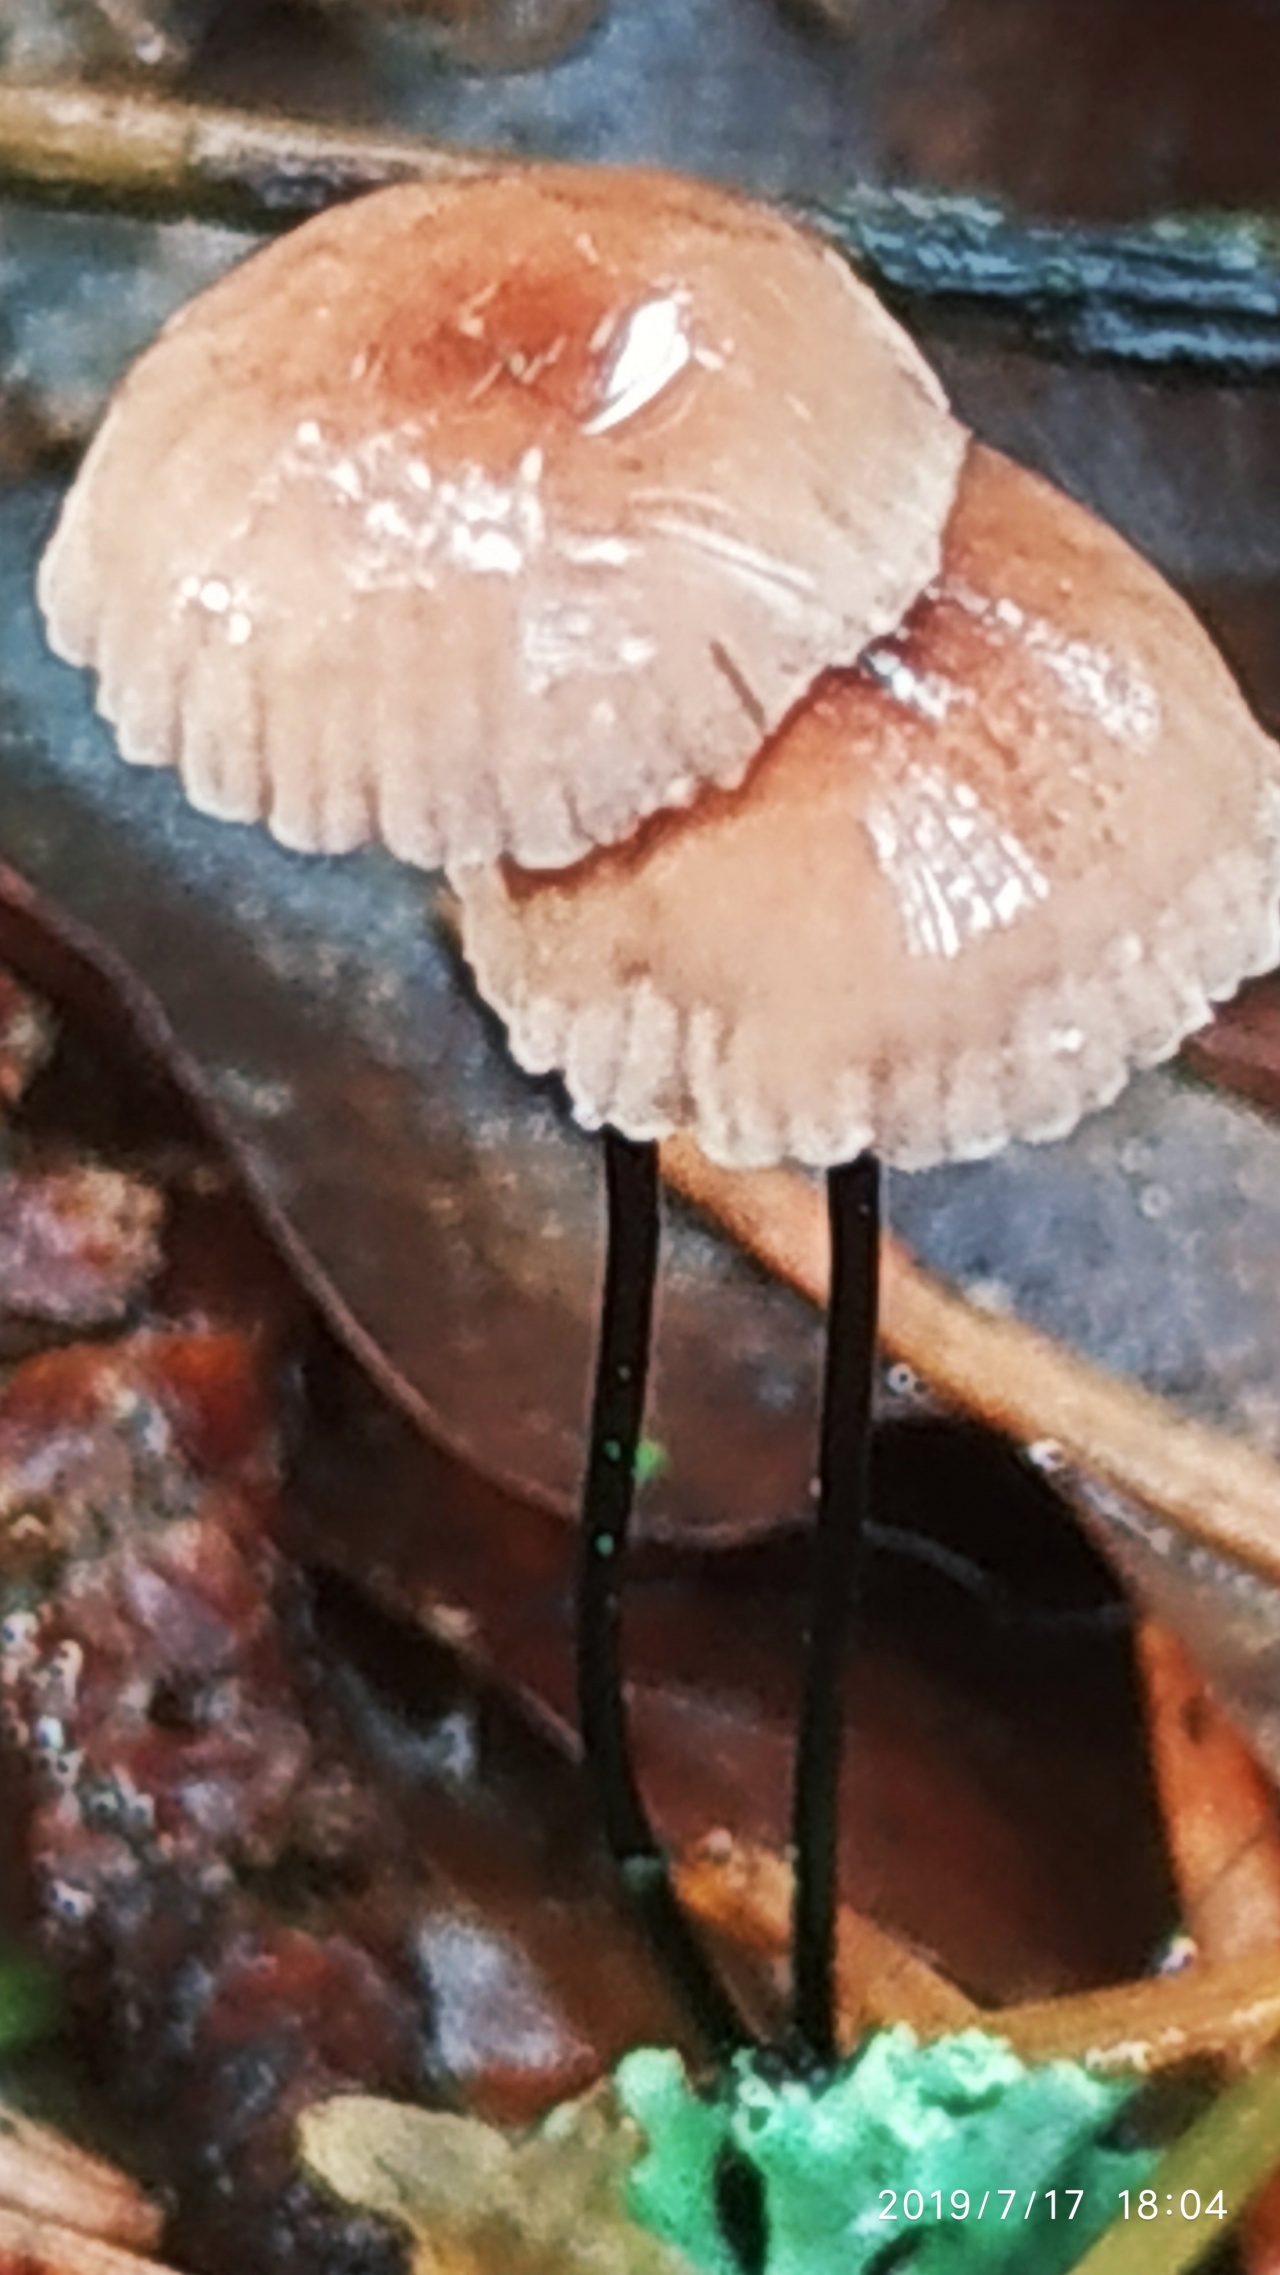 Негниючник тычинковый - Marasmius androsaceus